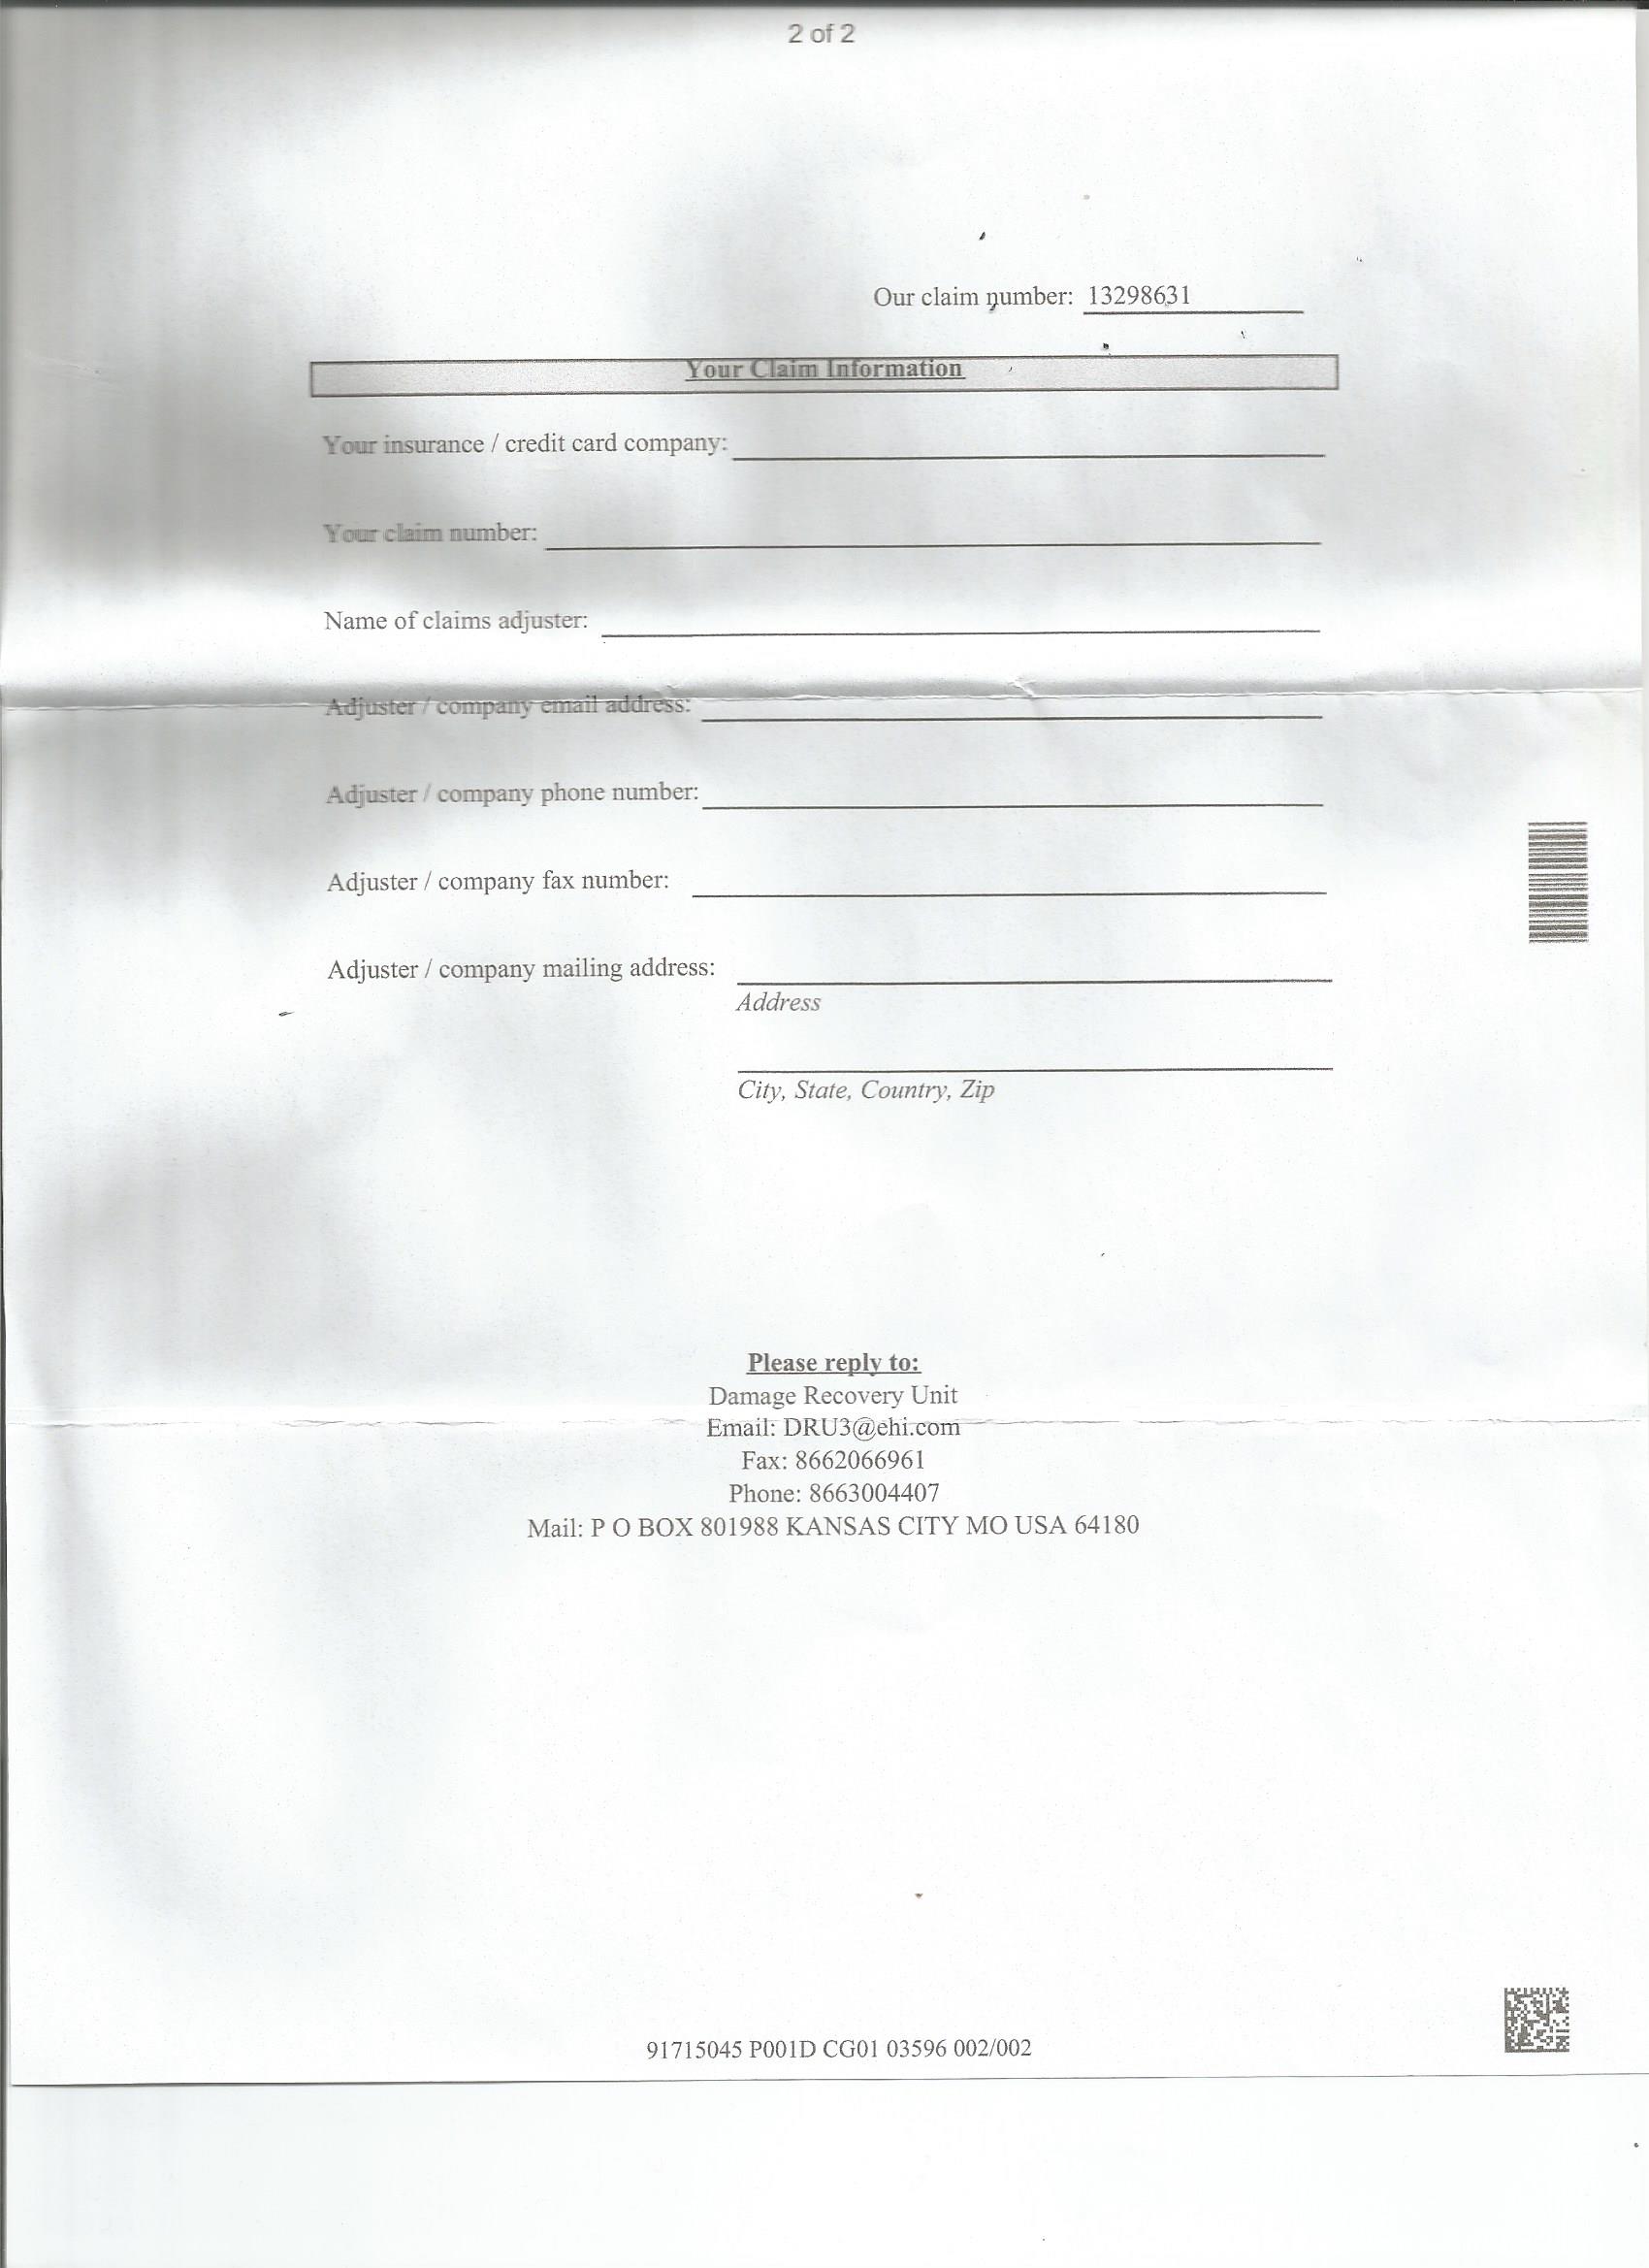 Copy of letter form Enterprise Page 2